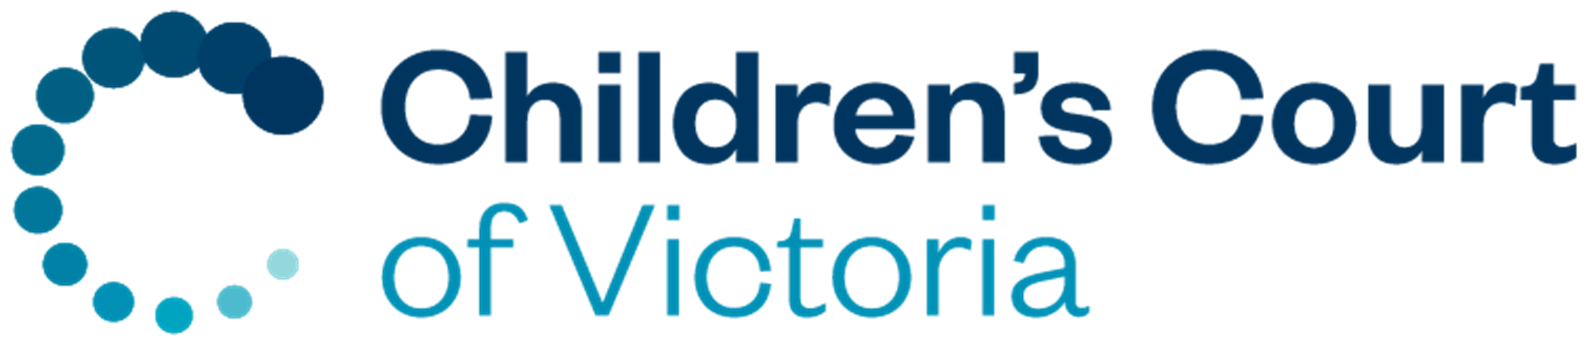 Children's Court of Victoria logo